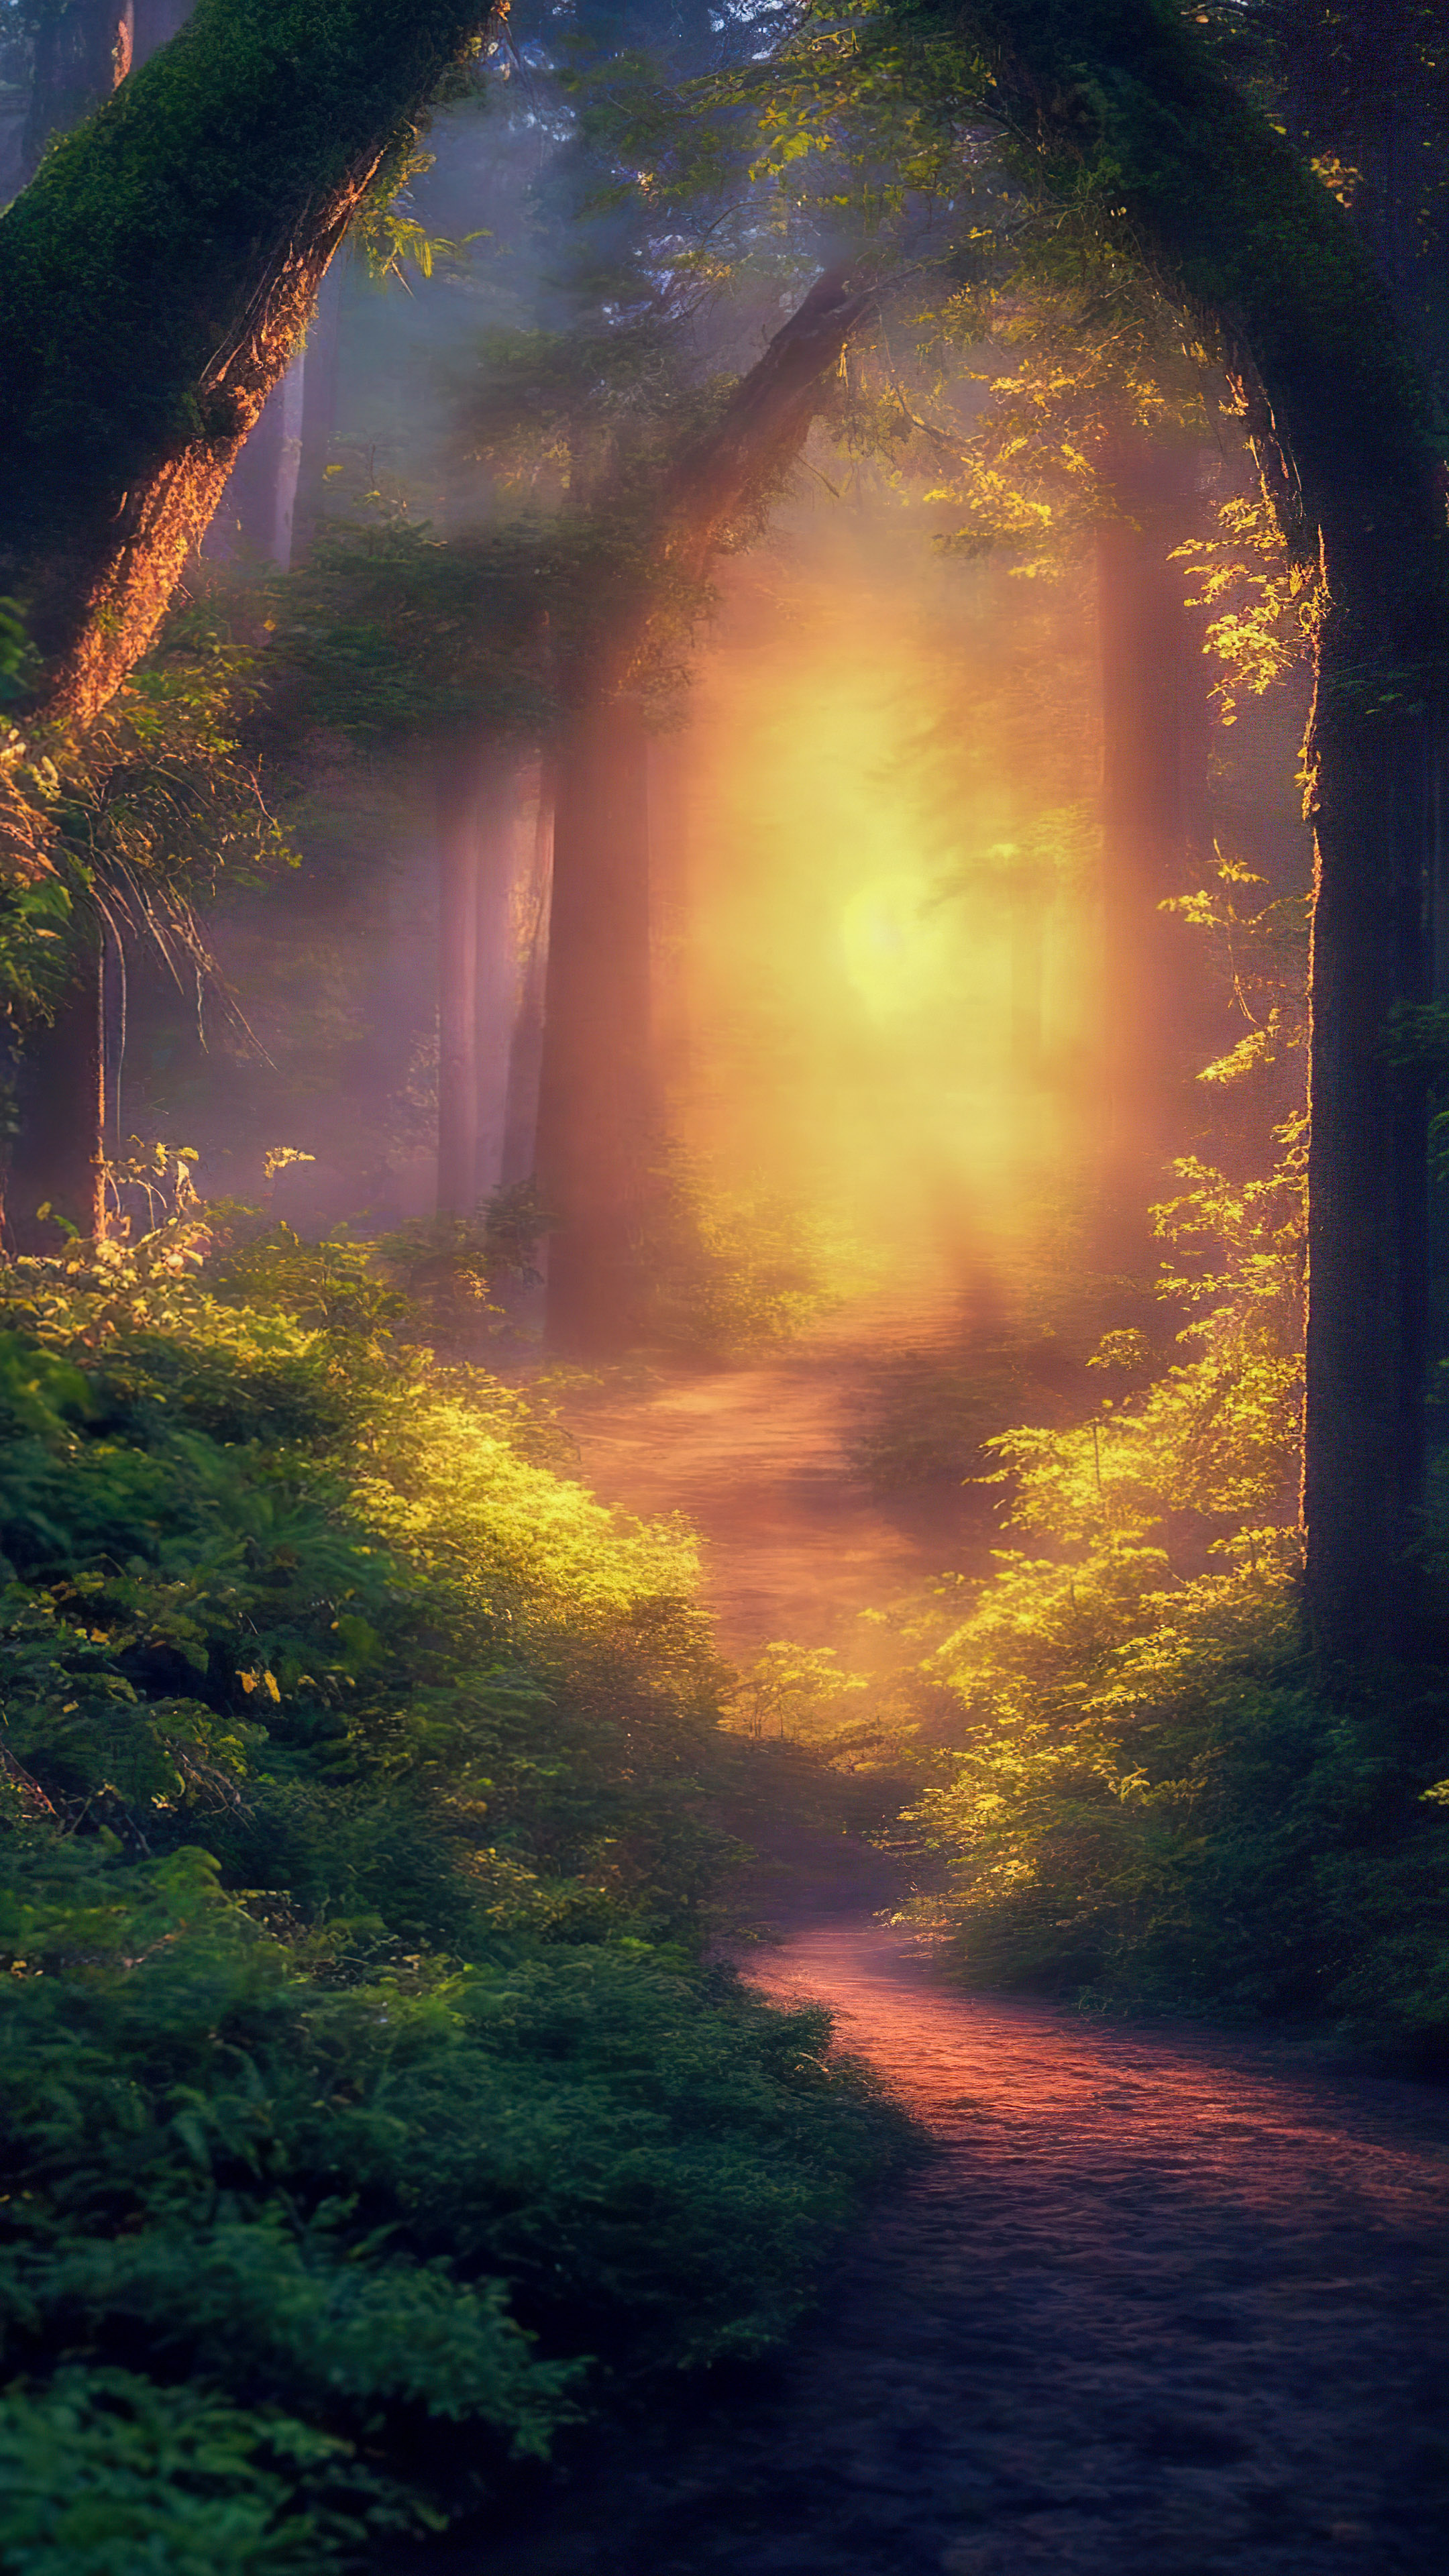 Immergez-vous dans une forêt magique illuminée par la douce lueur des lucioles lors d'une chaude soirée d'été avec notre fond d'écran 4K de paysages.